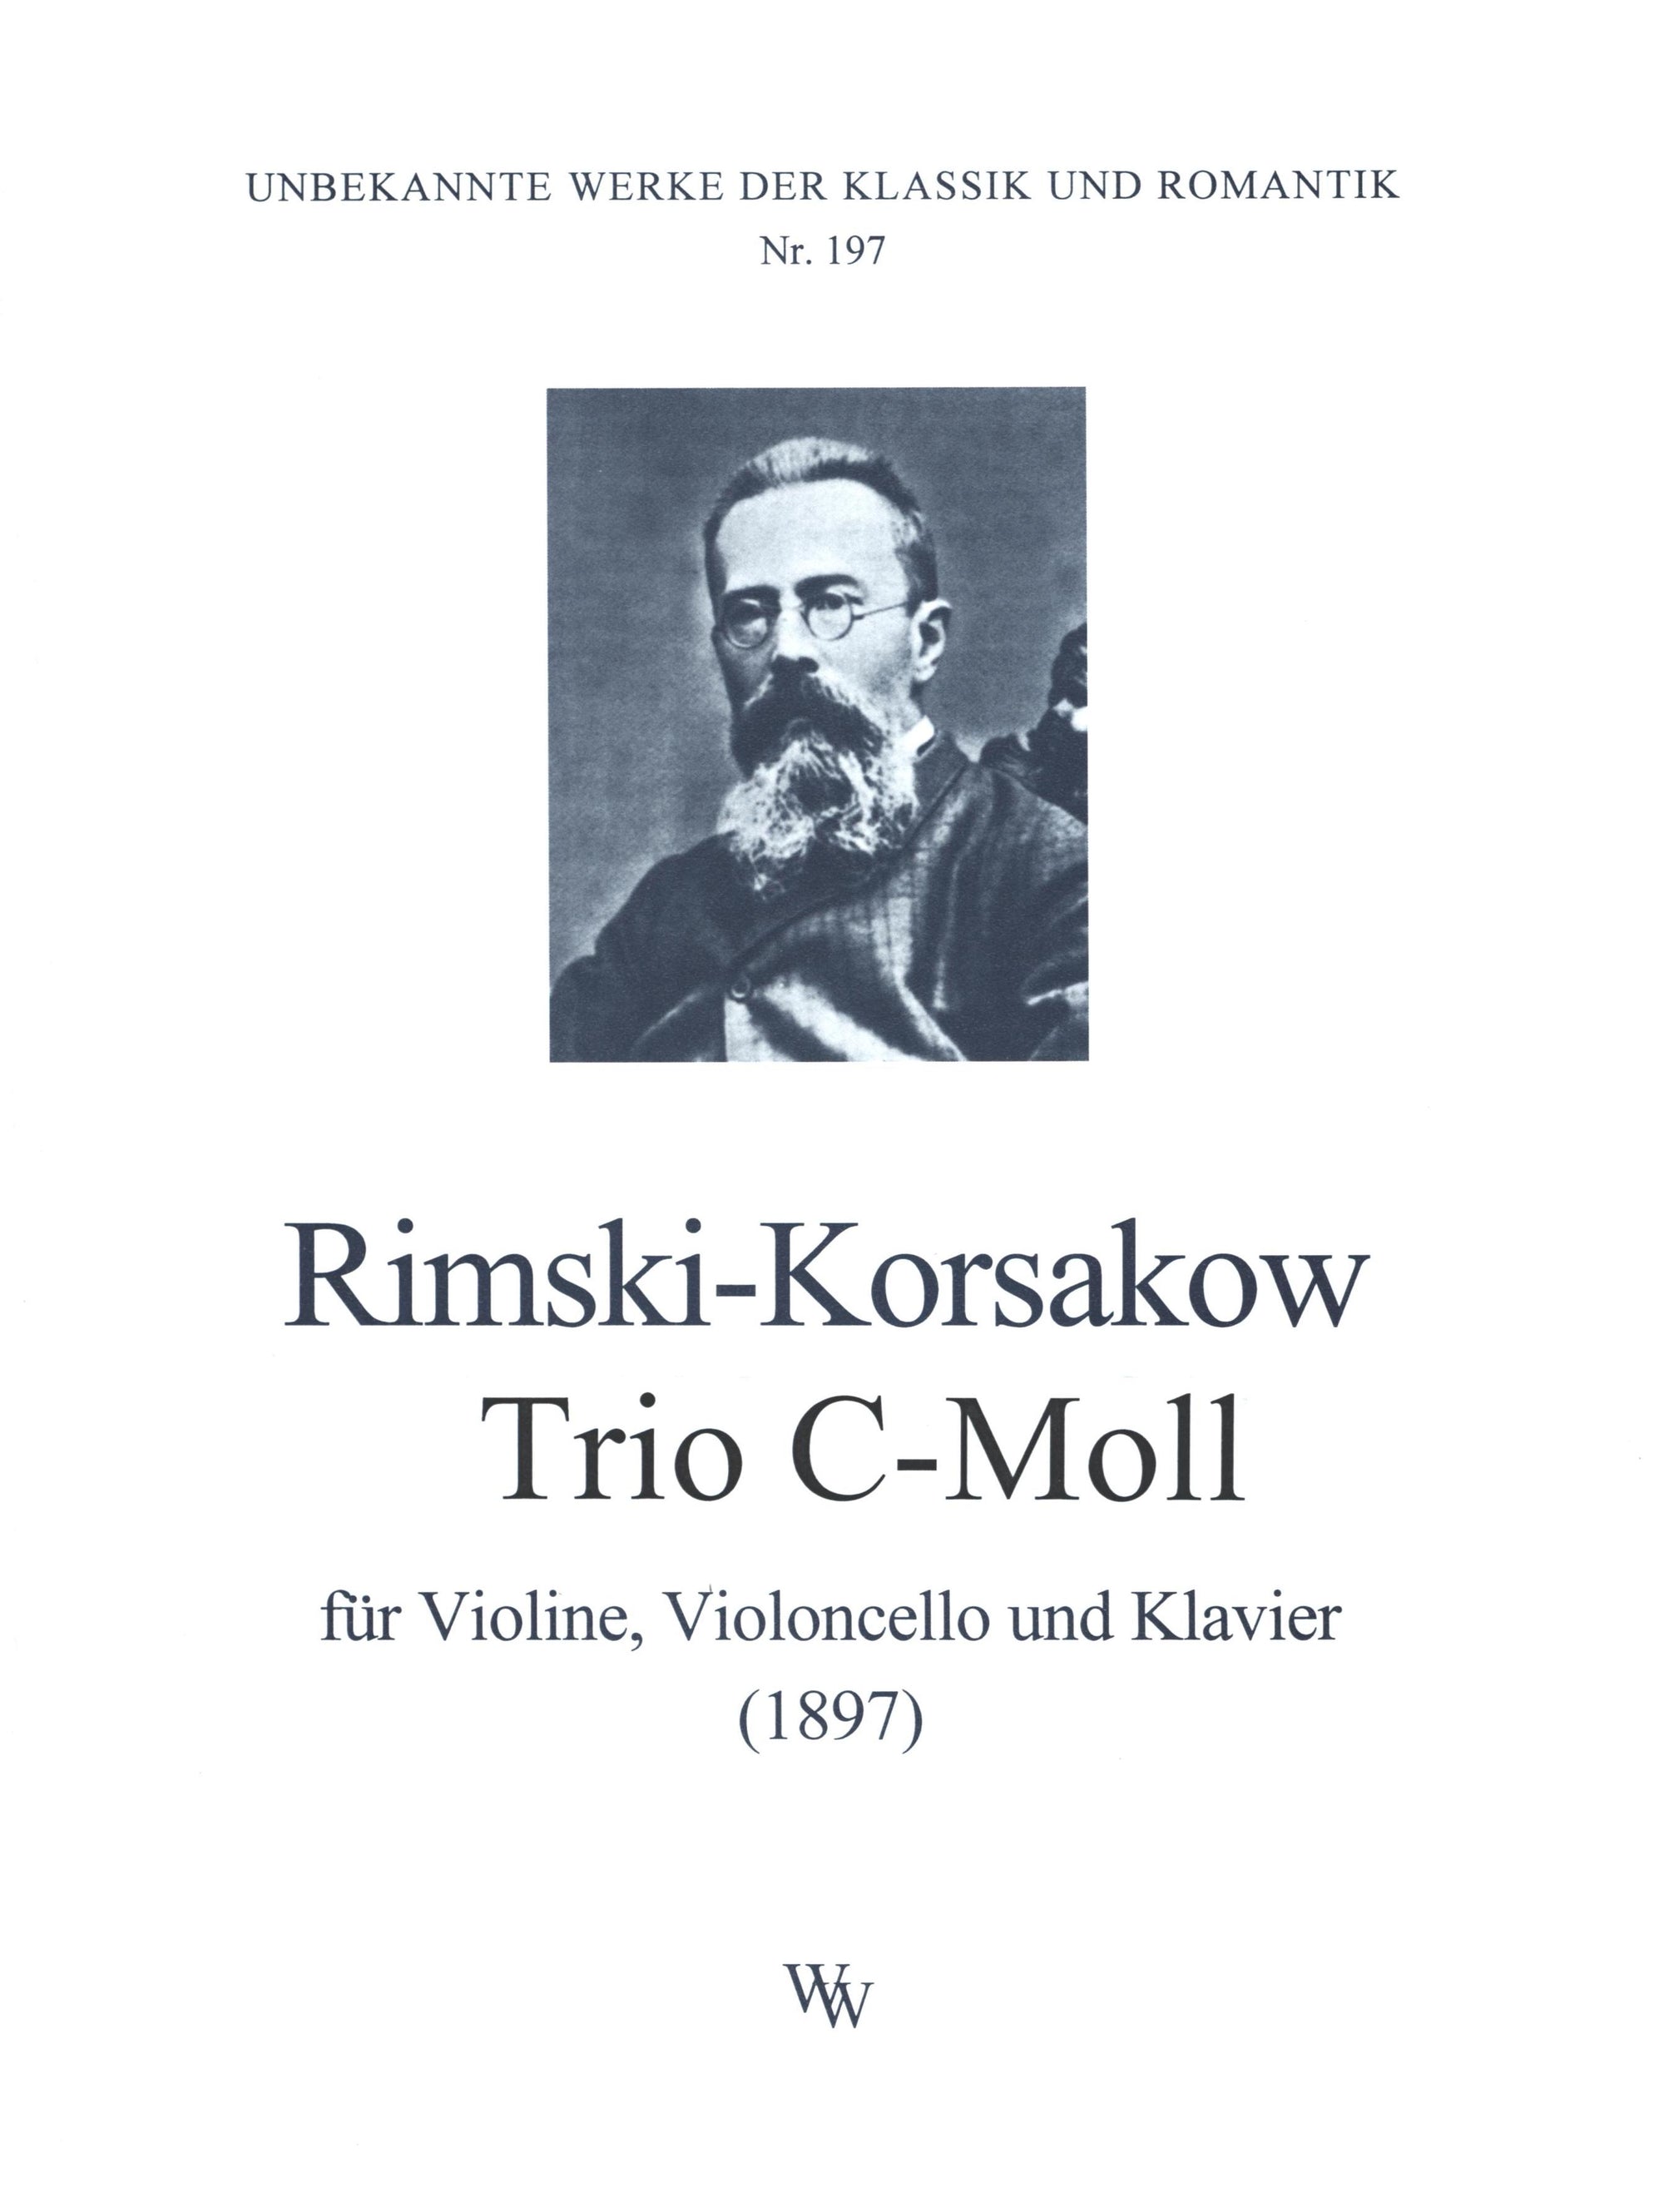 Rimsky-Korsakov: Piano Trio in C Minor